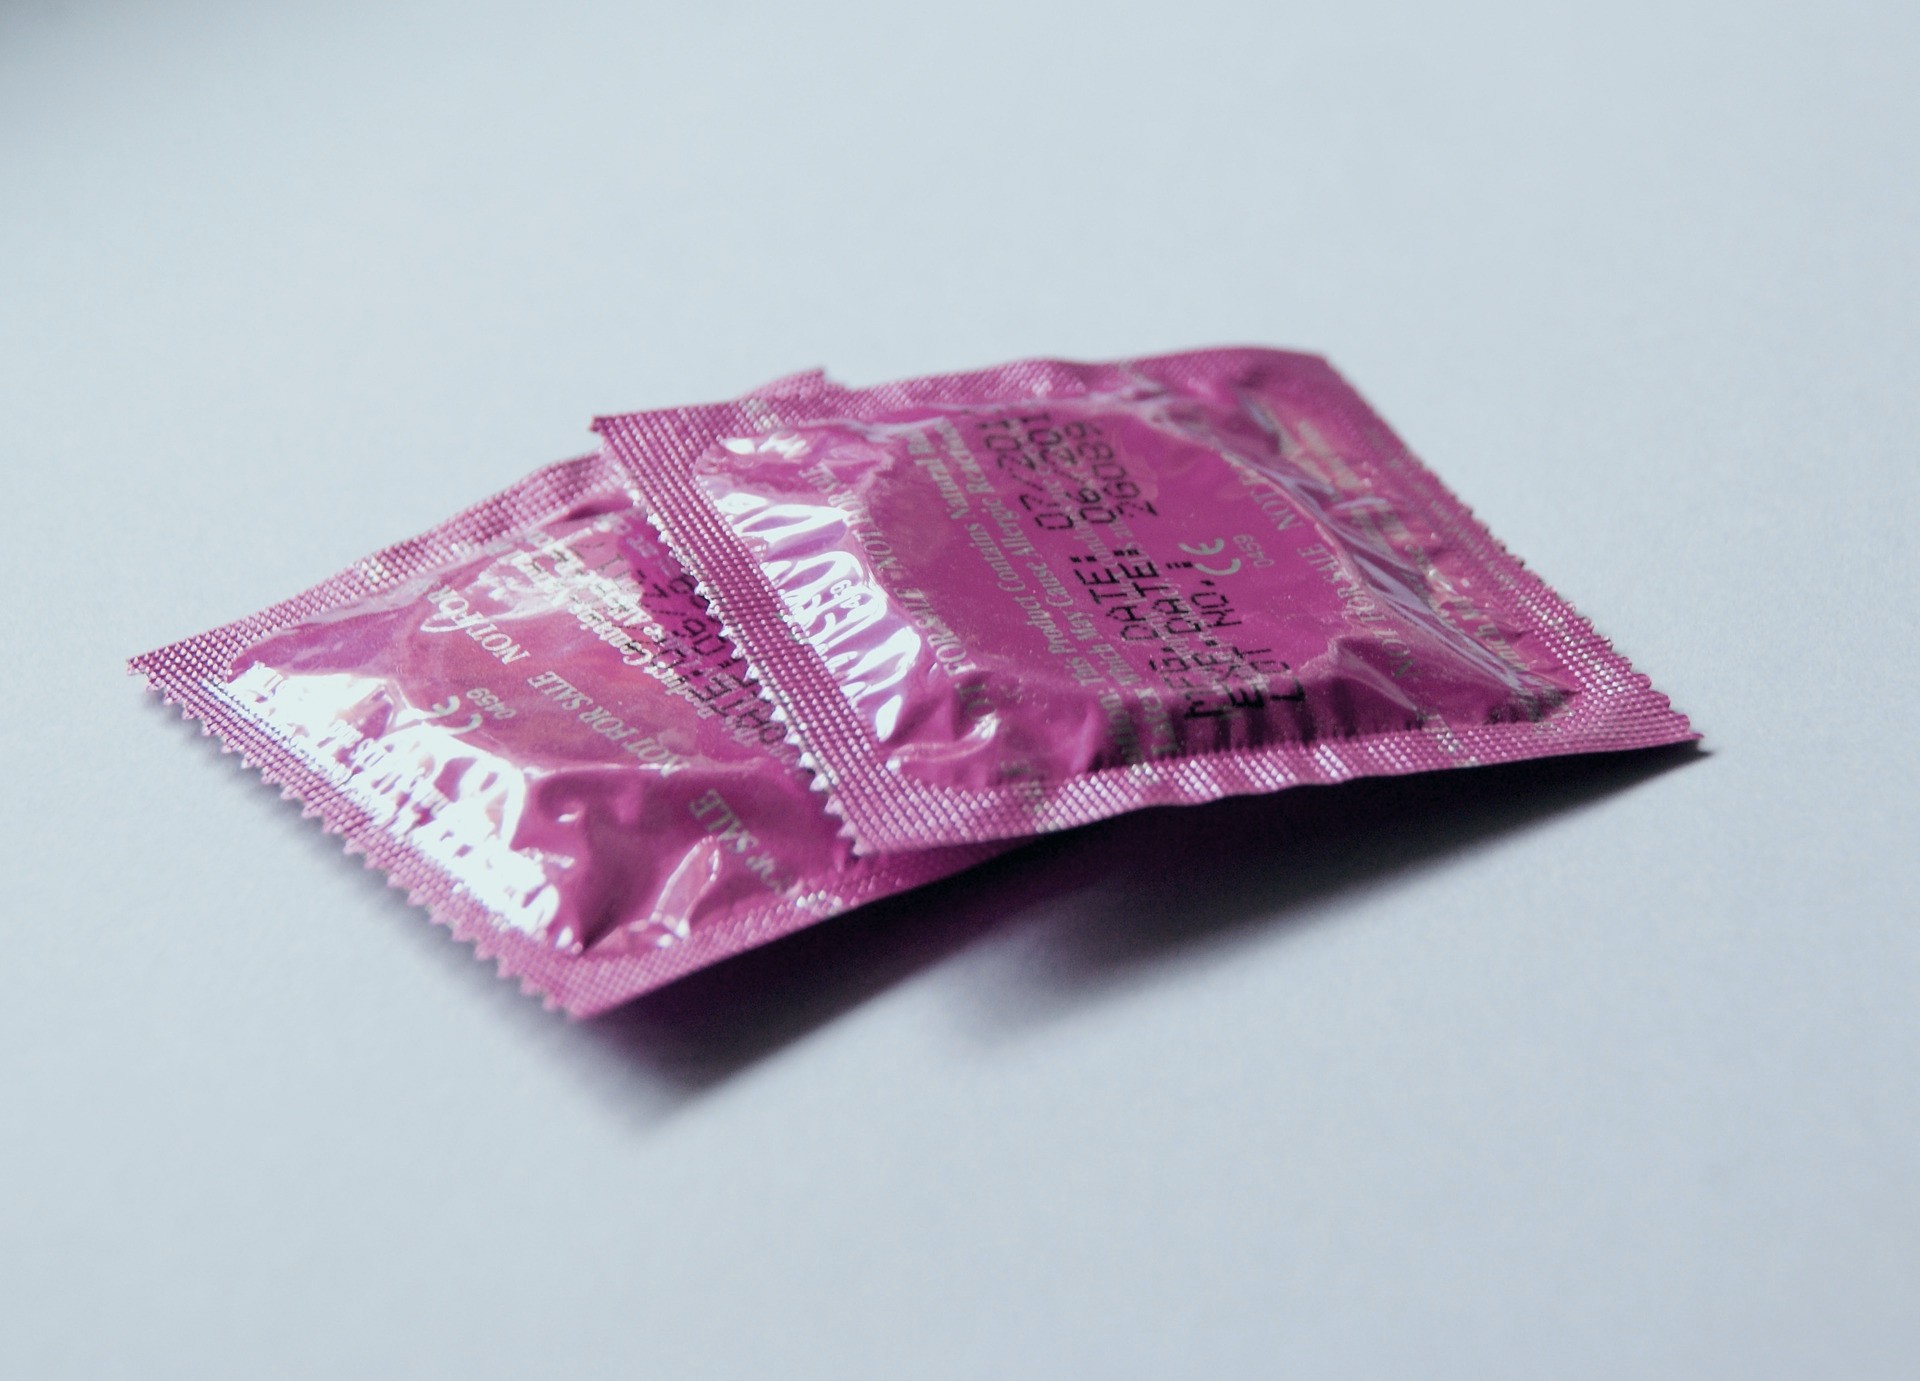 Kondome werden beim Stealthing heimlich entfernt.